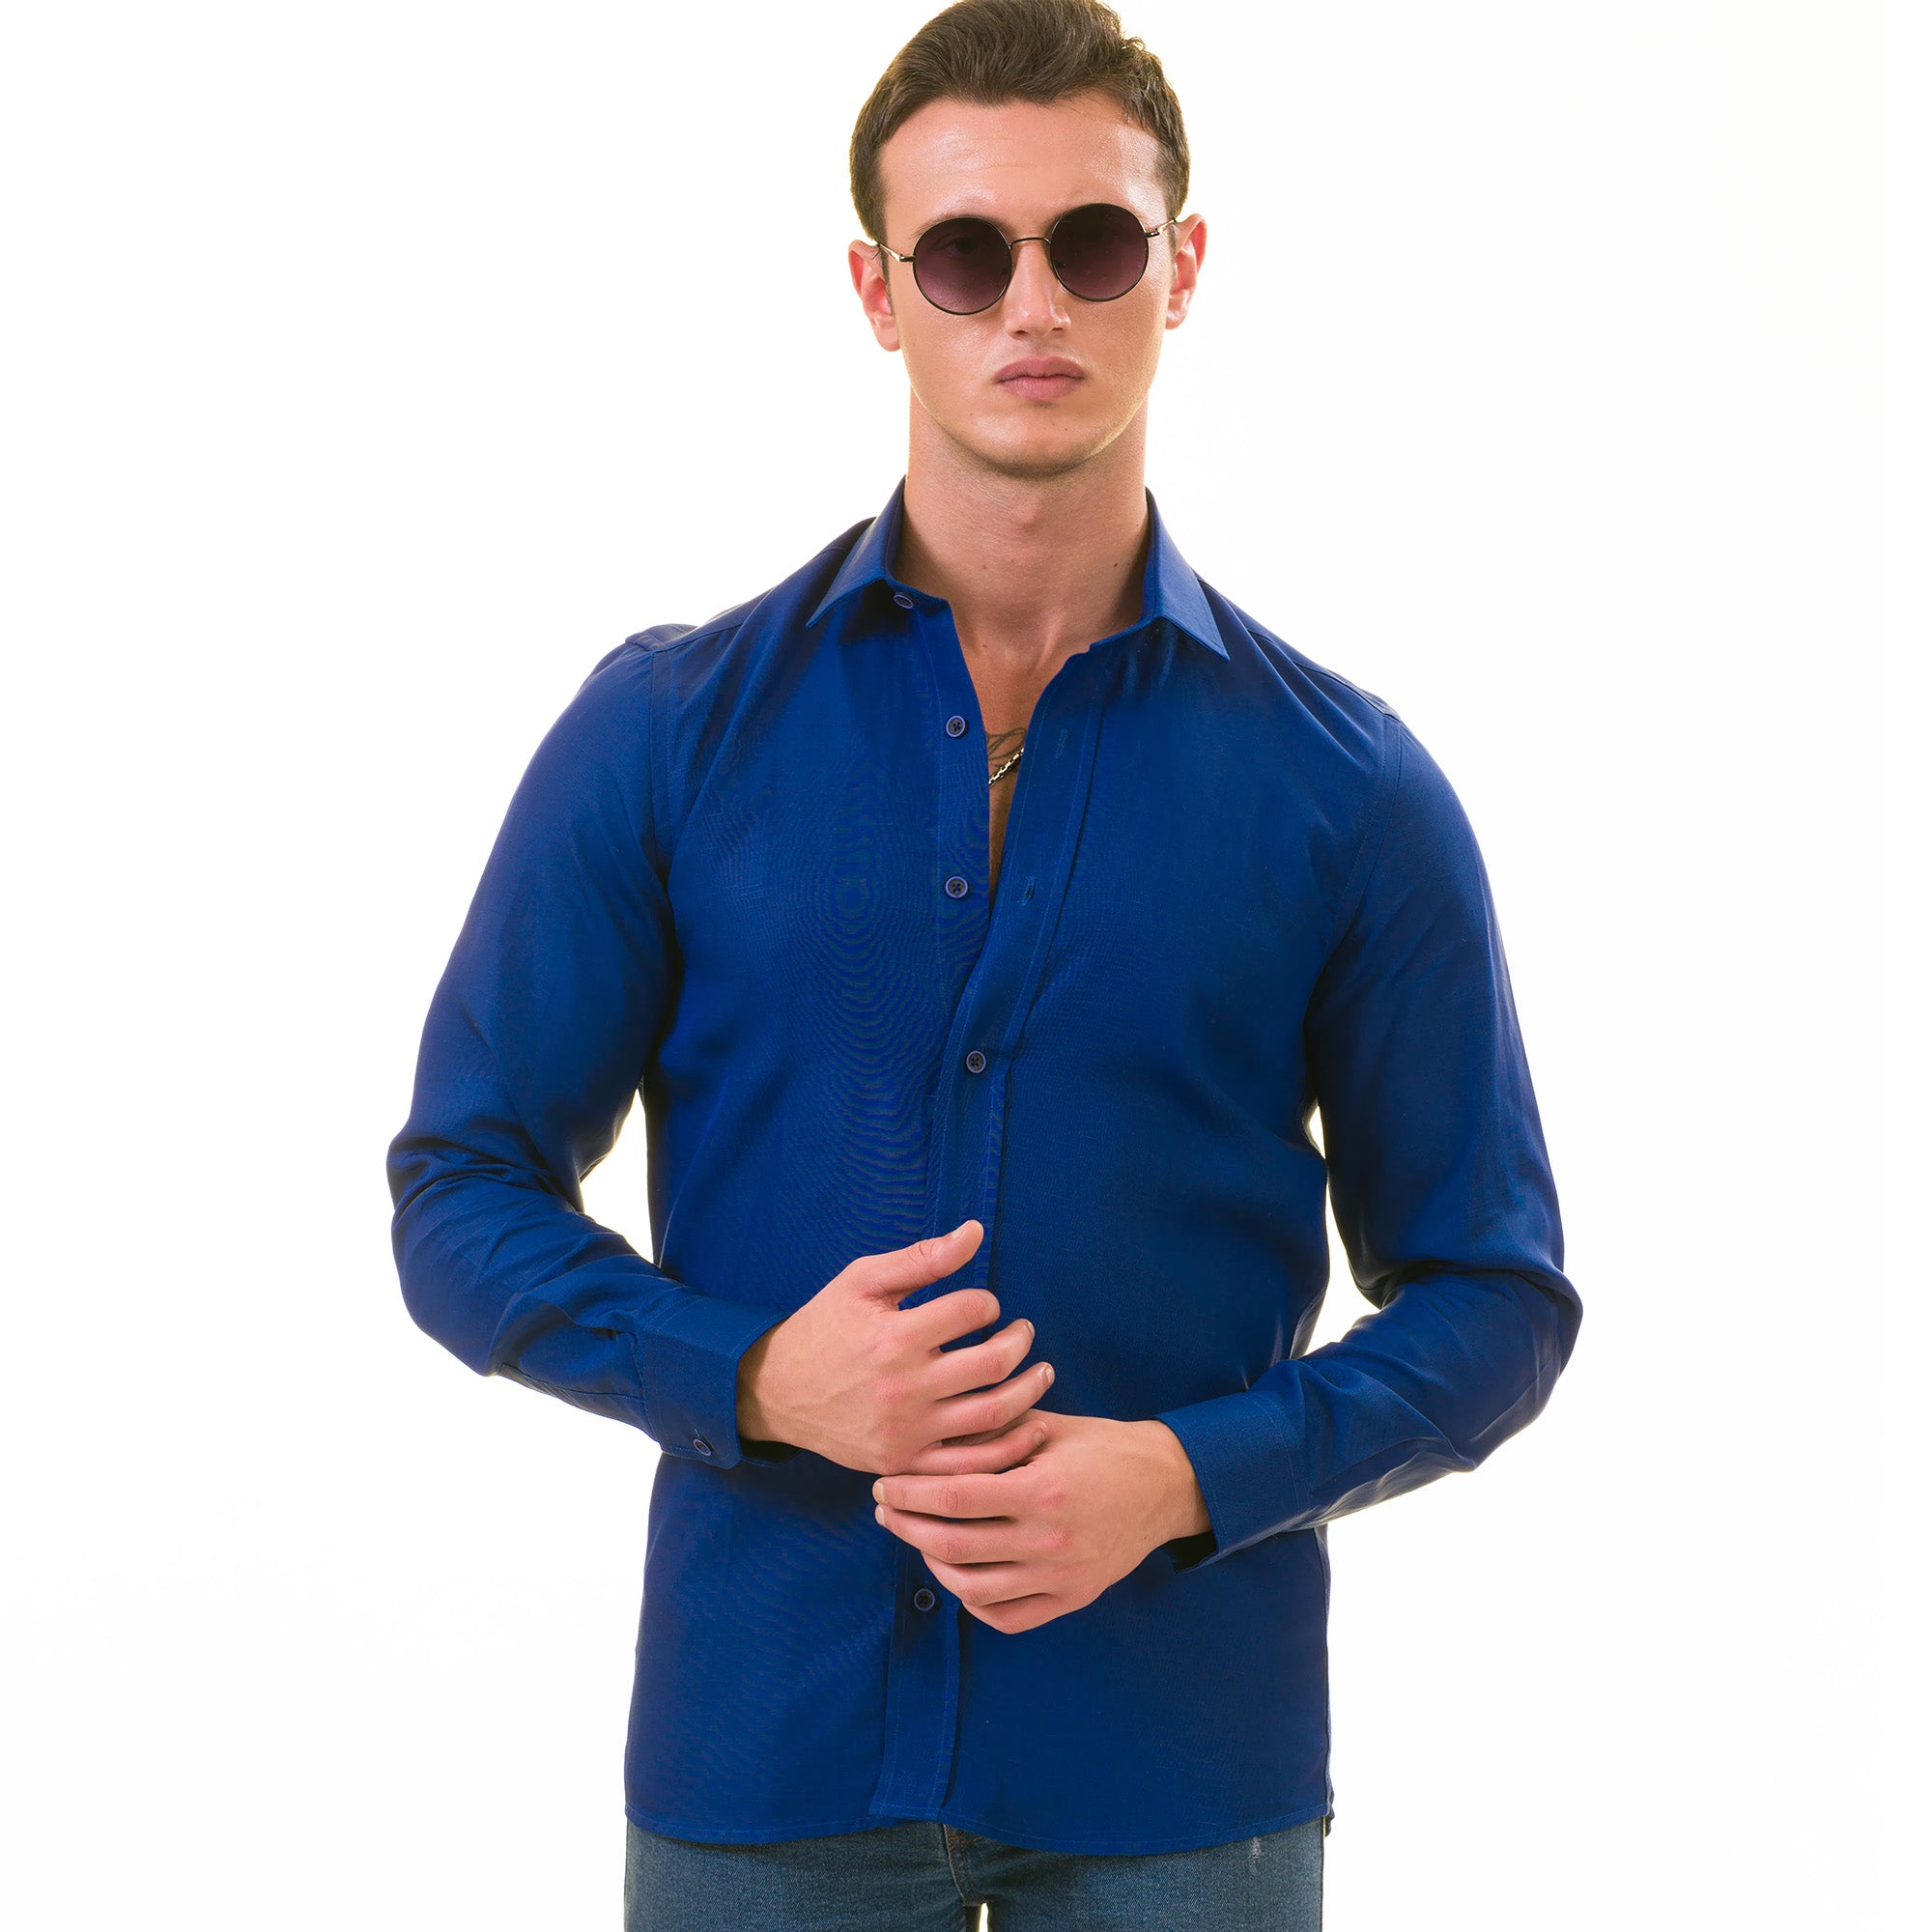 Men's Long Sleeved Linen Shirt, Cotton And Linen Casual Shirt, S-5xl Top